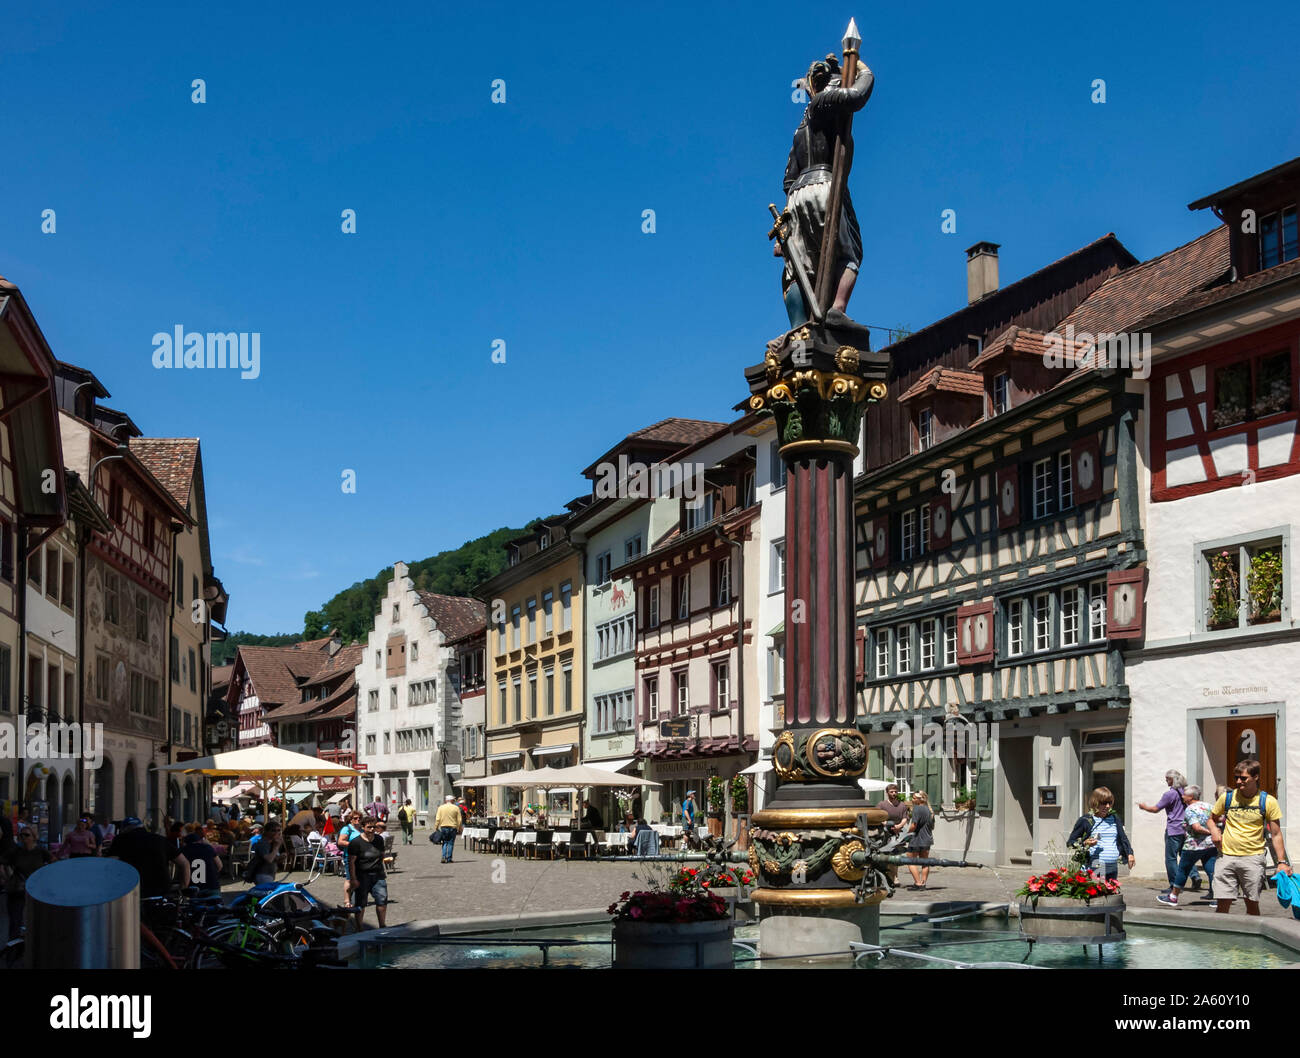 Street scene, fountain with Historic Market Cross, Stein am Rhein, Canton of Schaffhausen, Switzerland, Europe Stock Photo